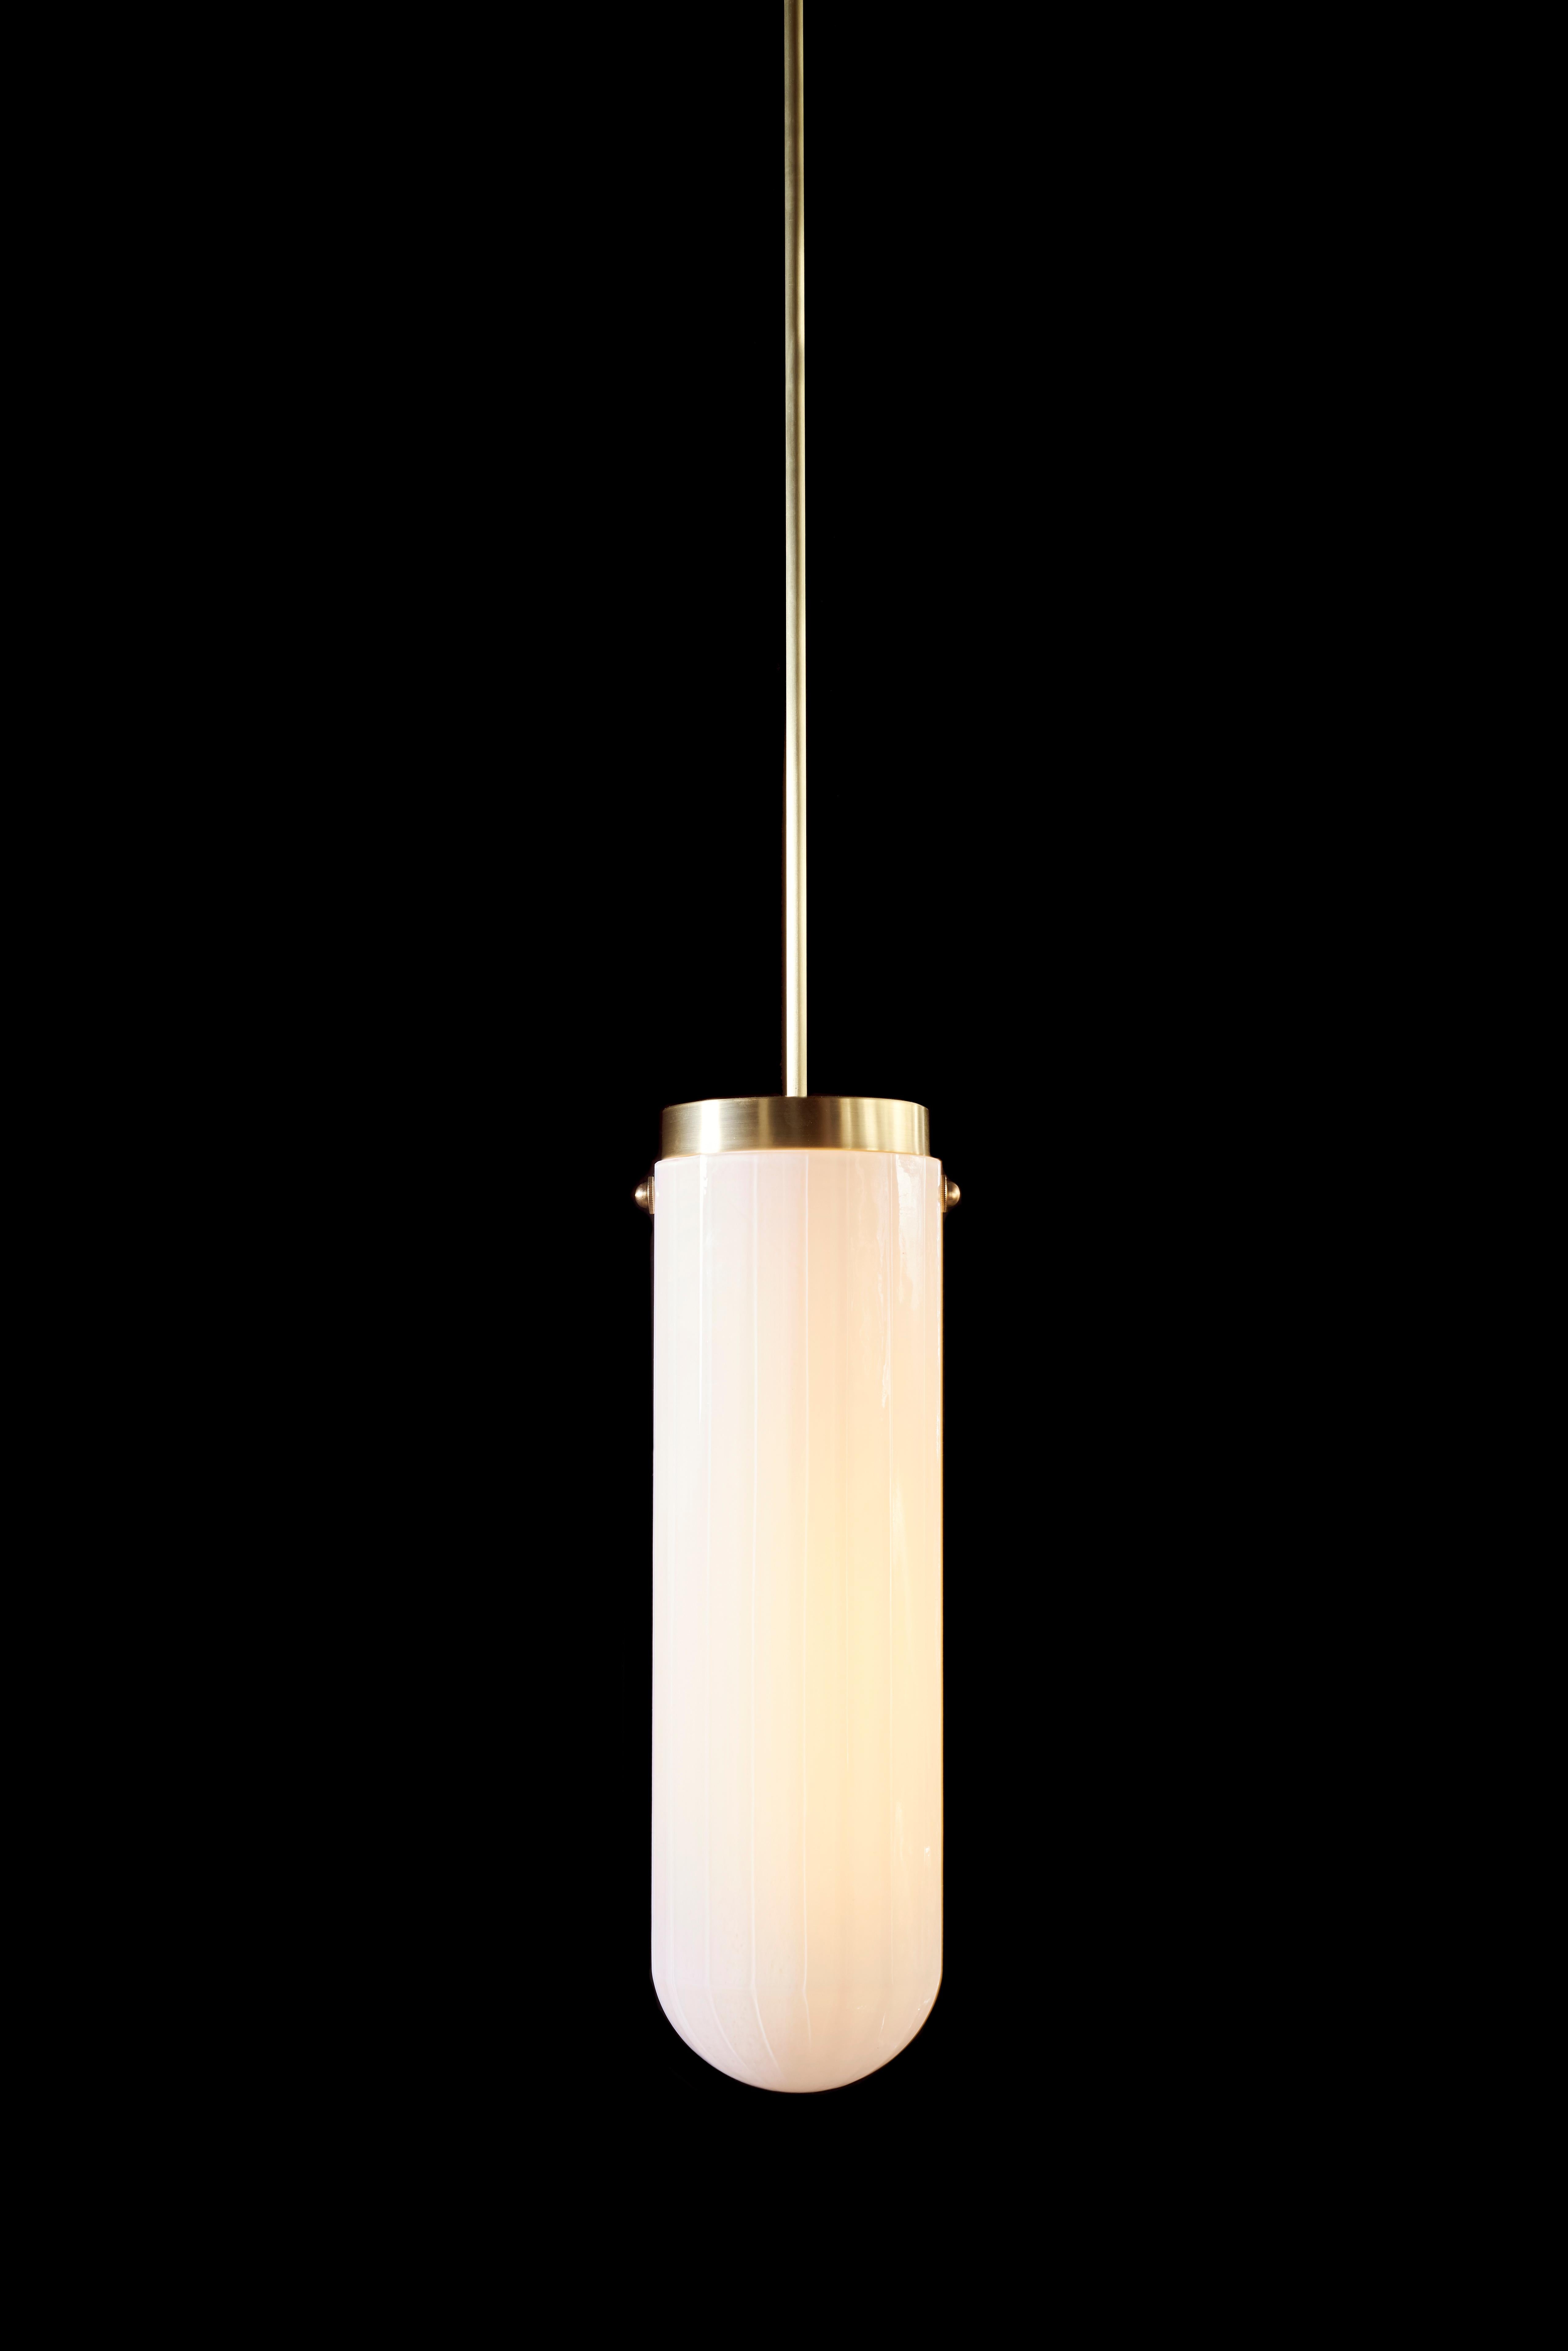 Die von der Art Moderne inspirierte Hängeleuchte Helios gehört zur Serie Bianco Light and Space, streamline. Diese Pendelleuchte aus mundgeblasenem, facettiertem Glas in weißer Emaille mit Messingbeschlägen umfasst geschwungene Formen und lineare